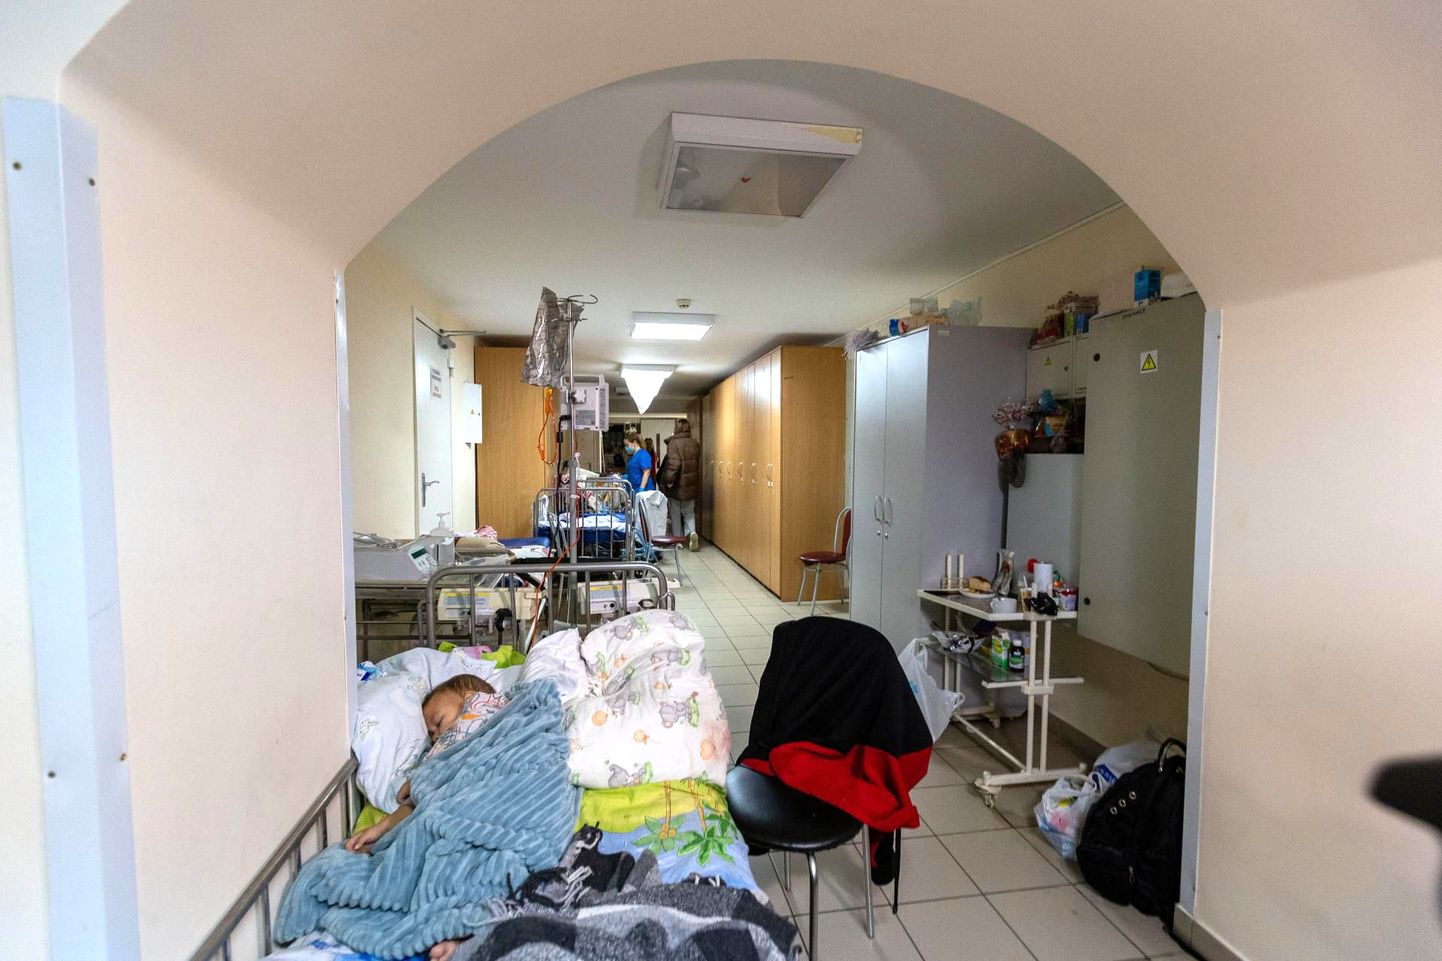 Kiievis on ohus kõigi inimeste elud. Lastehaigla on toimetanud väikesed patsiendid kaitseks Venemaa armee pommirahe eest keldris asuvasse varjendisse. Selle pildi on teinud praegu Kiievis viibiv Järva Teataja fotograaf Dmitri Kotjuh.